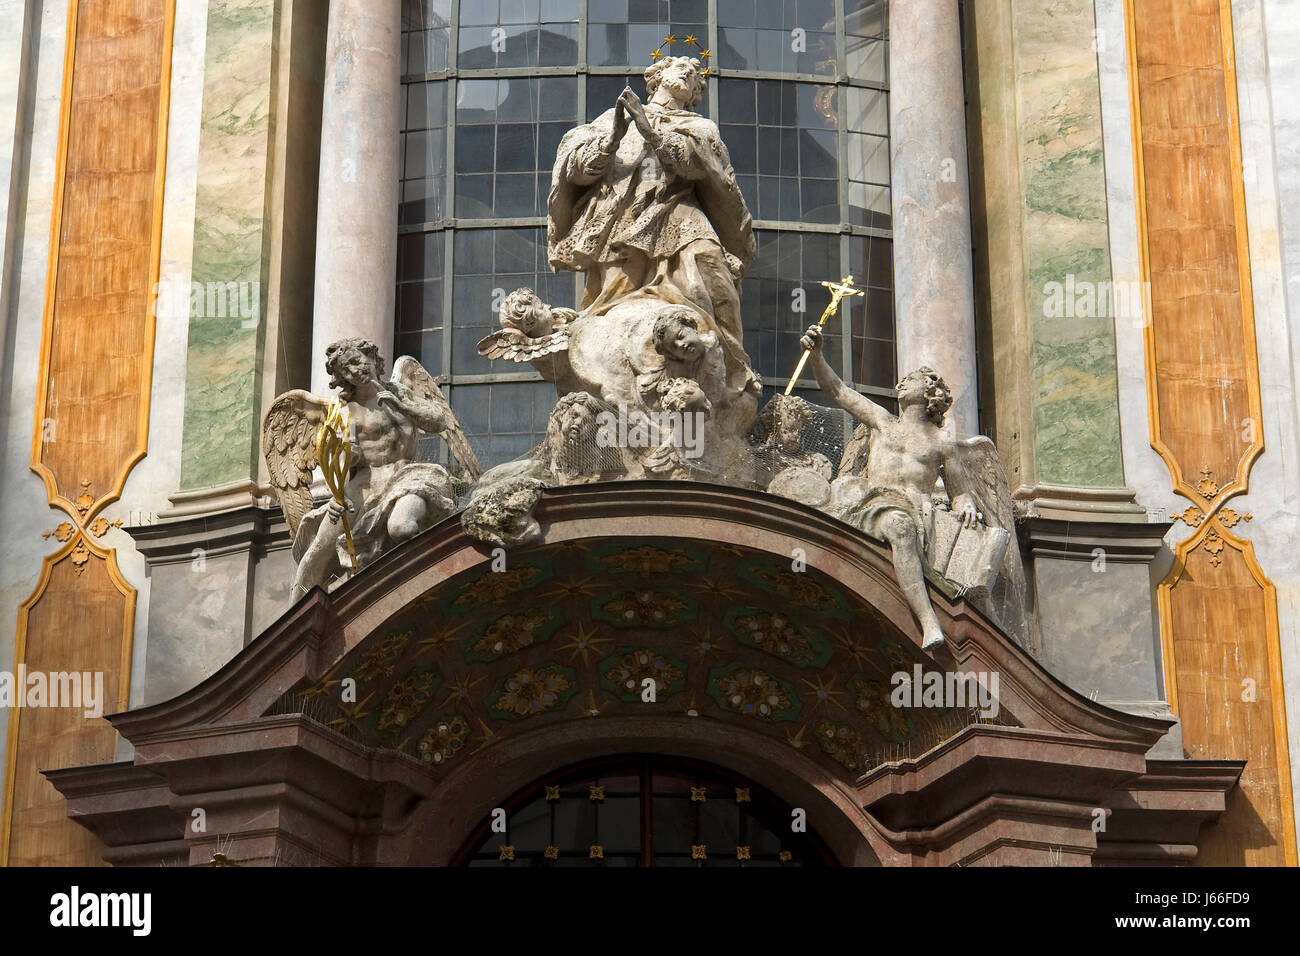 Storico Baviera Germania Repubblica federale tedesca monaco di baviera chiese storiche Foto Stock